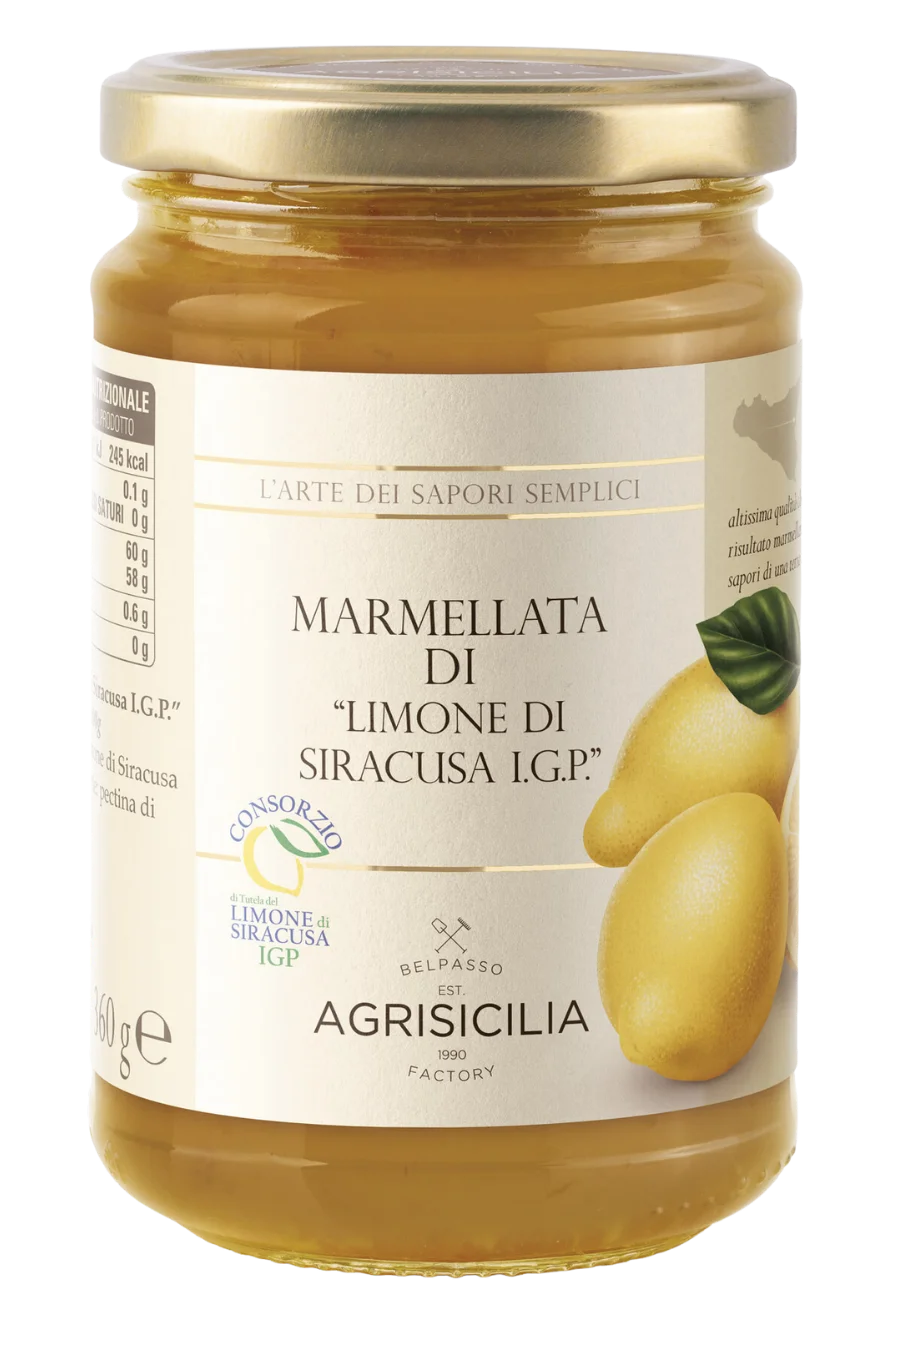 Marmellata di Limone di Siracusa I.G.P. artigianale, prodotto siciliano di alta qualità